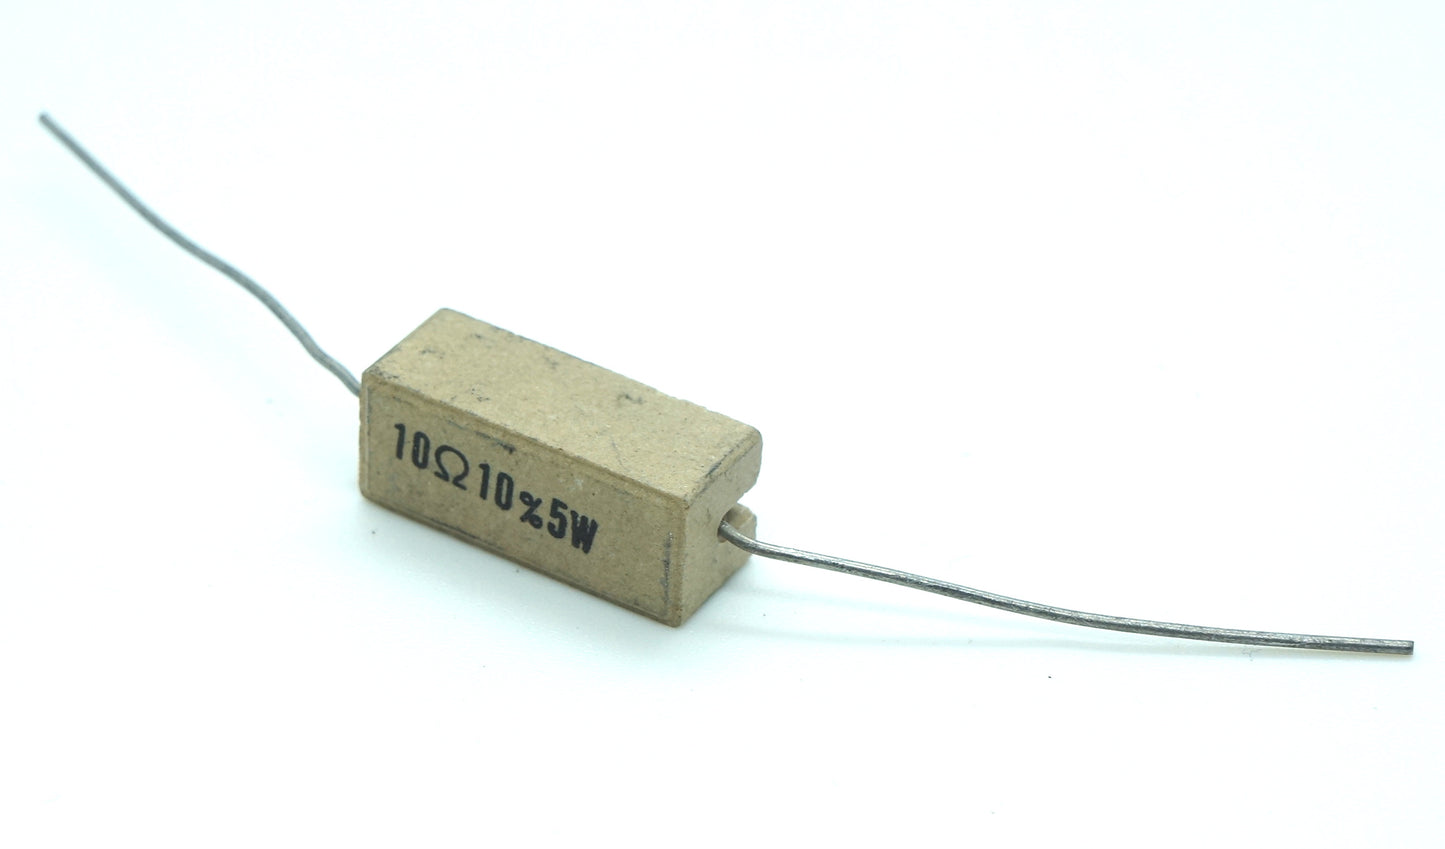 Lot of 10 Power Resistors 5 Watt 10 Ohm 10% Tolerance